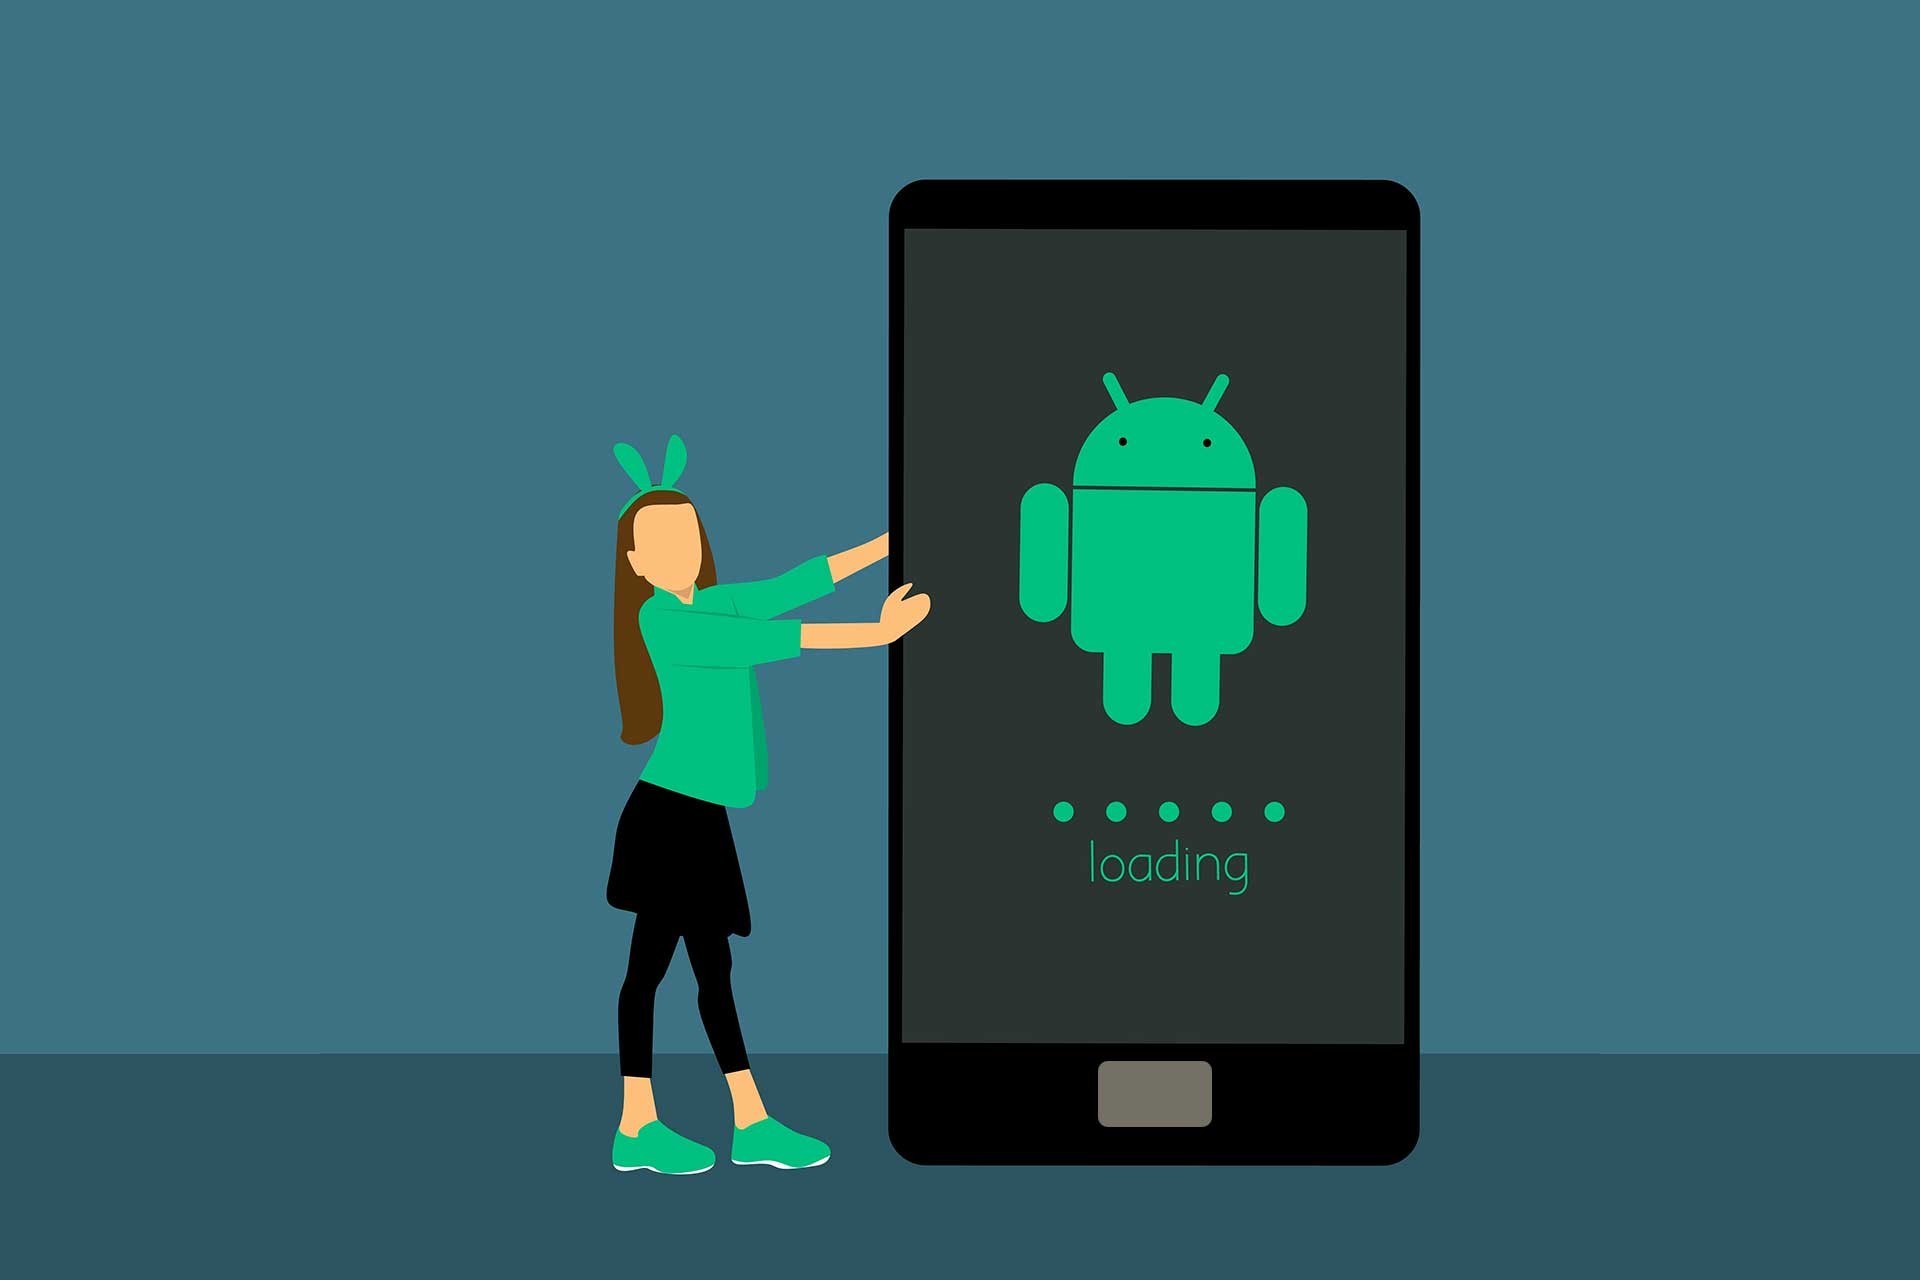 android telefonlardaki uygulama cokme sorunu webview sorunu nasil cozulur evrensel